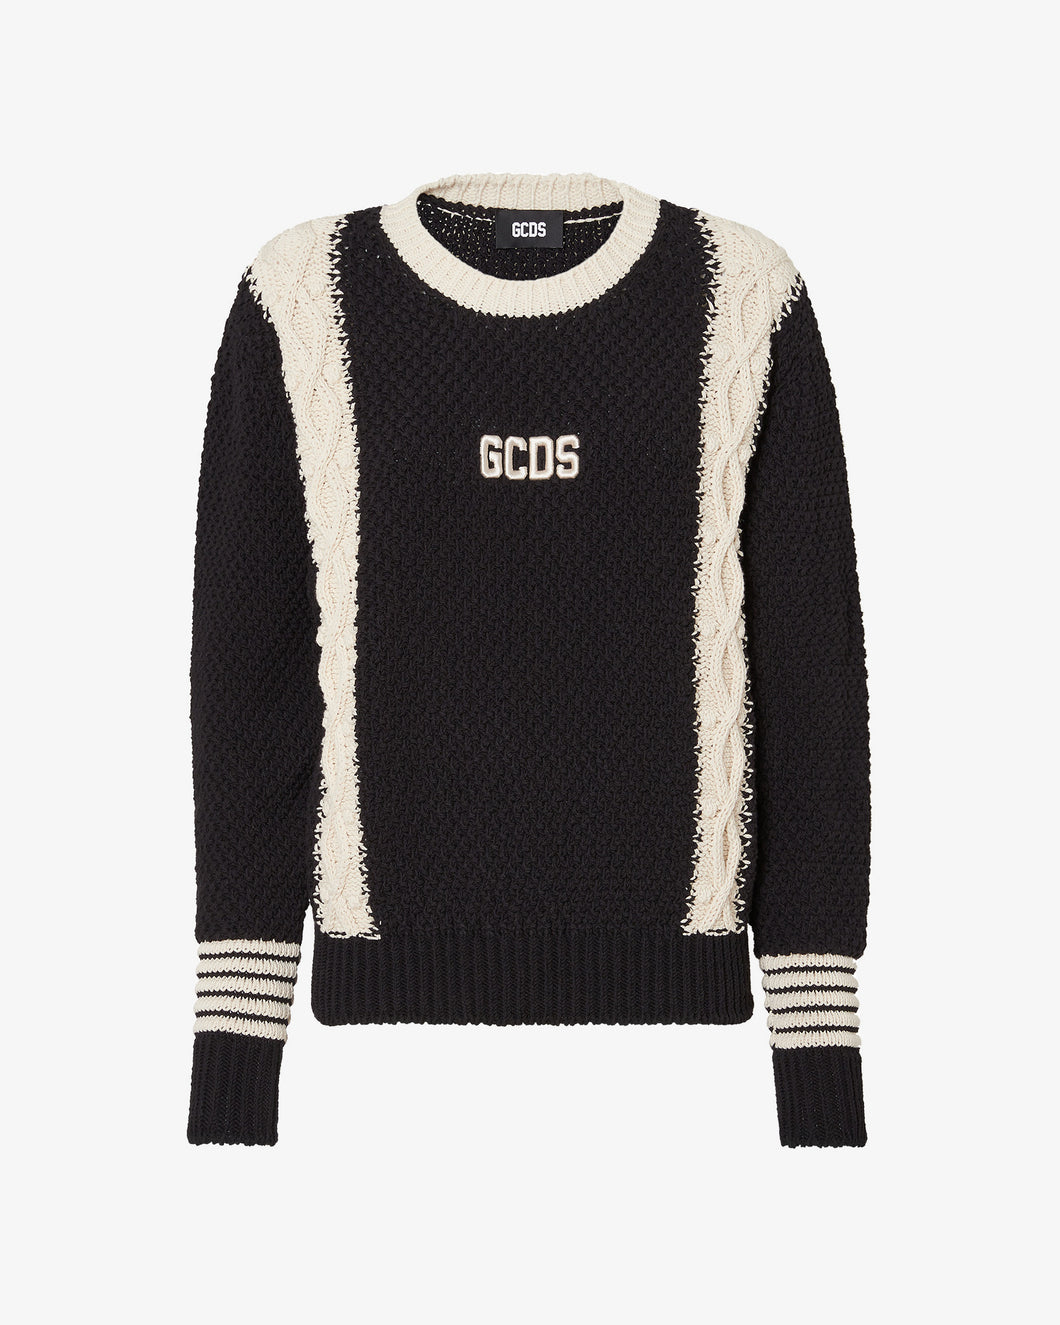 Gcds Braid Sweater | Women Knitwear Black | GCDS®